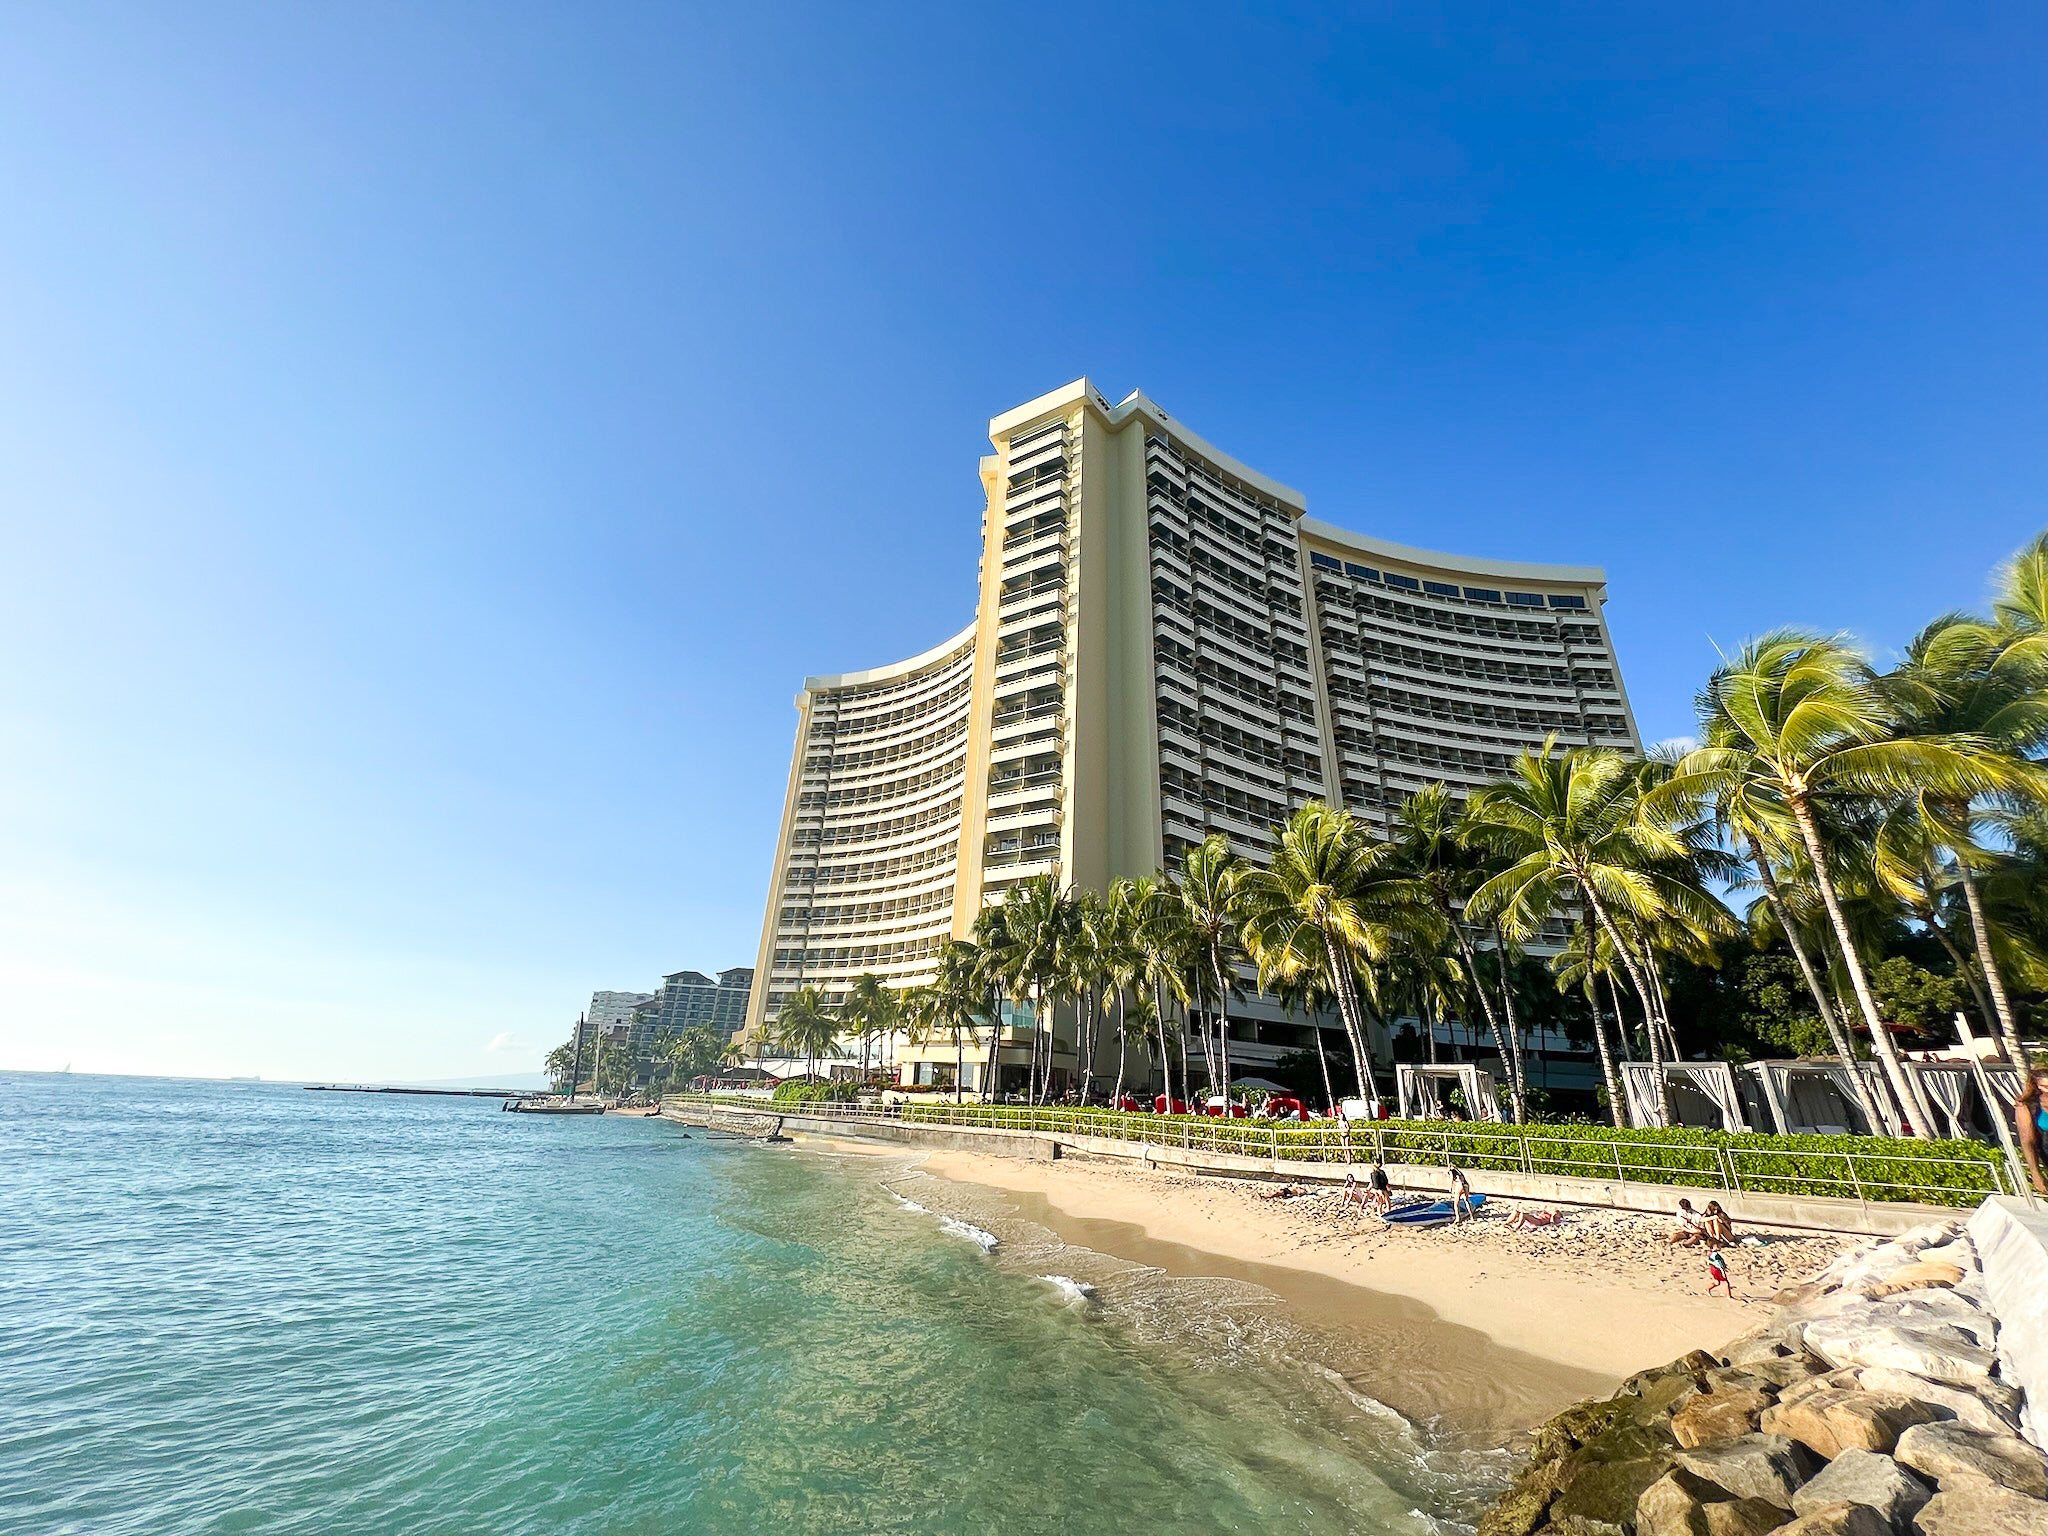 Sheraton Waikiki hotel from beach